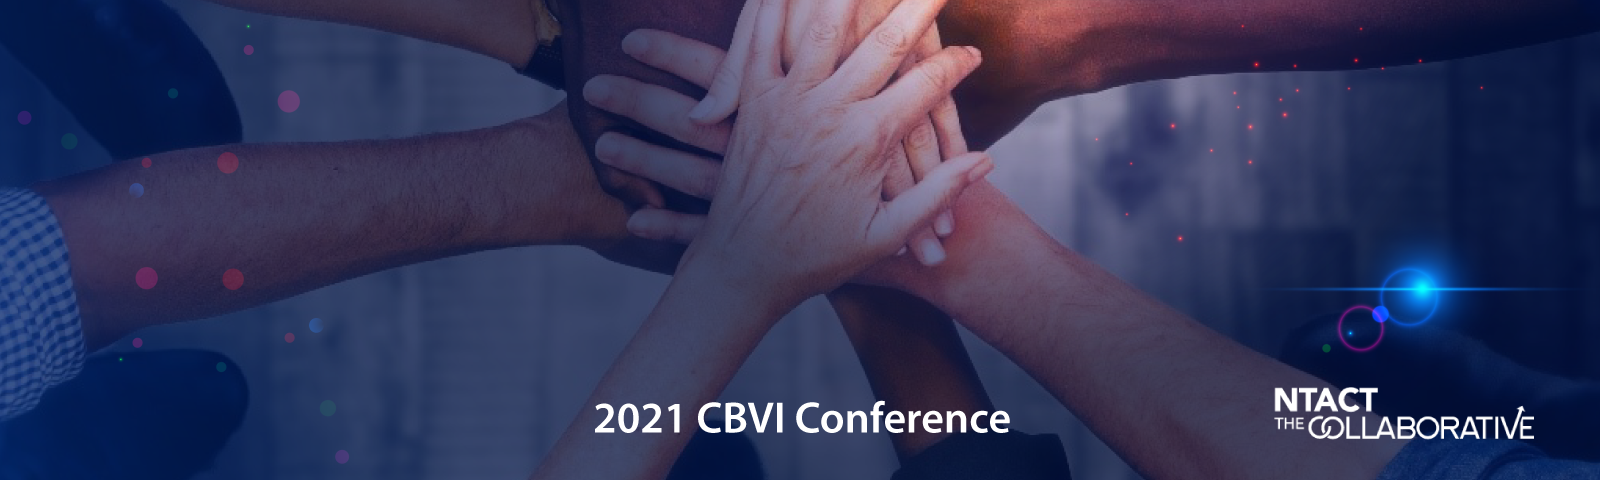 2021 CBVI Conference